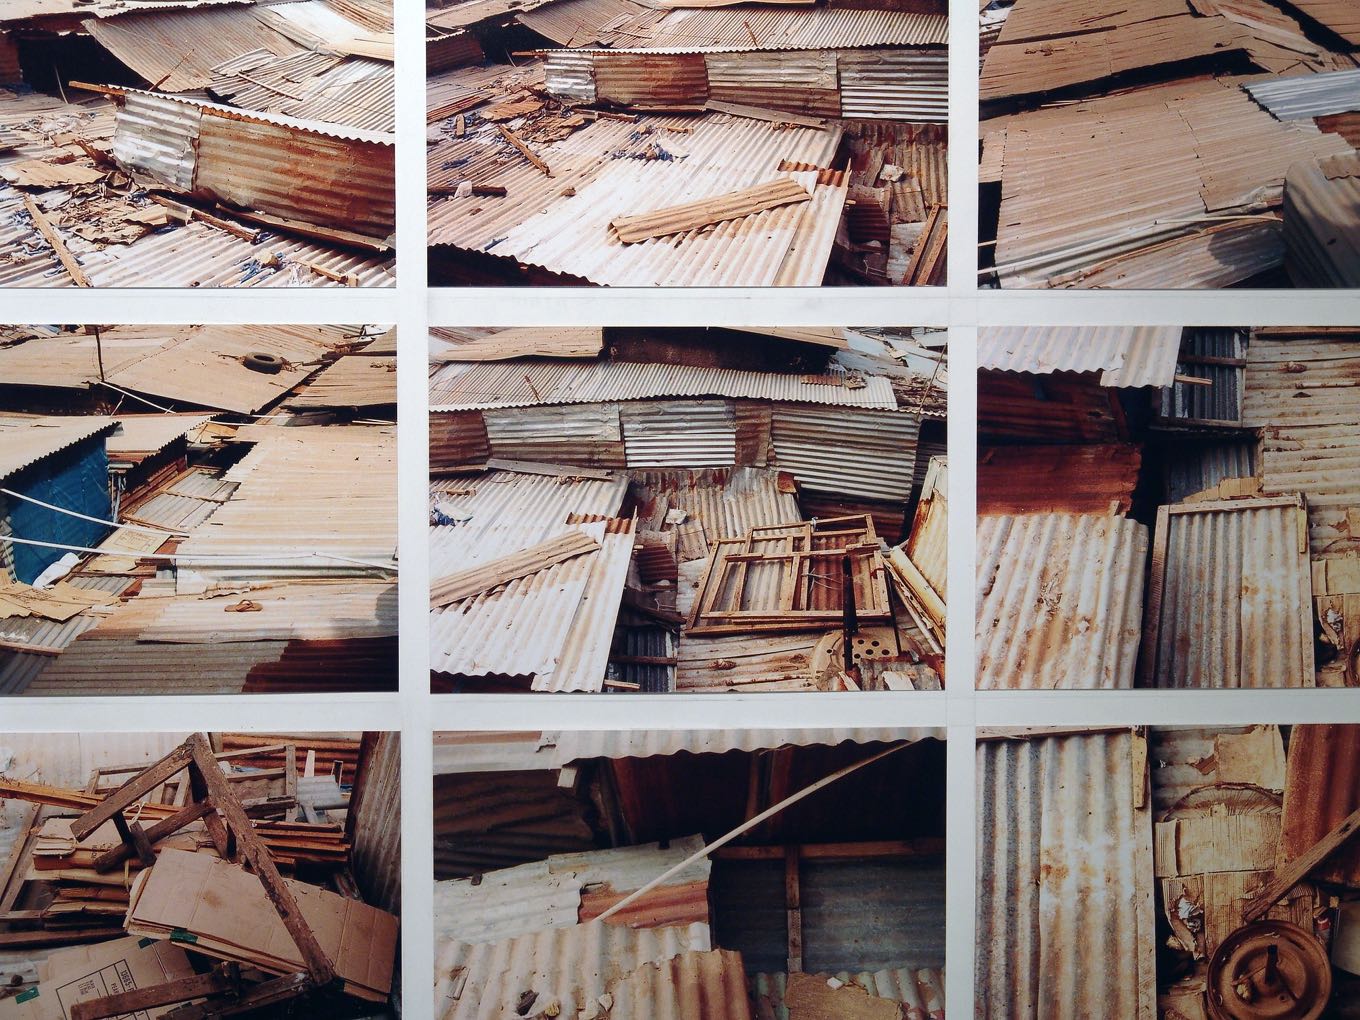 Simon Krüsi: Ausschnitt von Serrekunda Walk, 2002, Mixed Media mit Fotos und Ton, 120 x 65cm